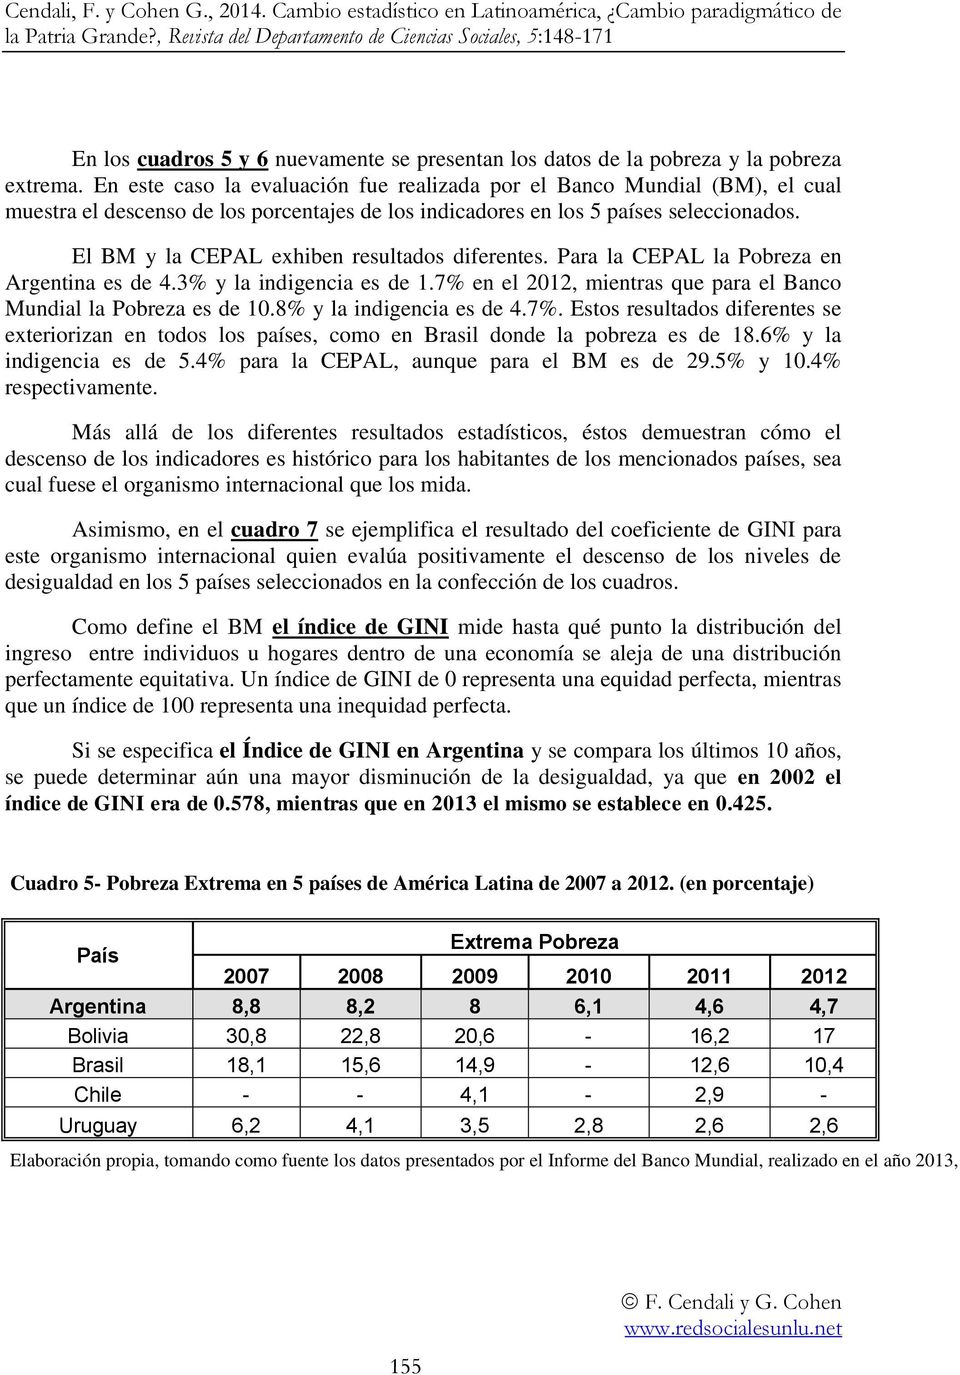 El BM y la CEPAL exhiben resultados diferentes. Para la CEPAL la Pobreza en Argentina es de 4.3% y la indigencia es de 1.7% en el 2012, mientras que para el Banco Mundial la Pobreza es de 10.